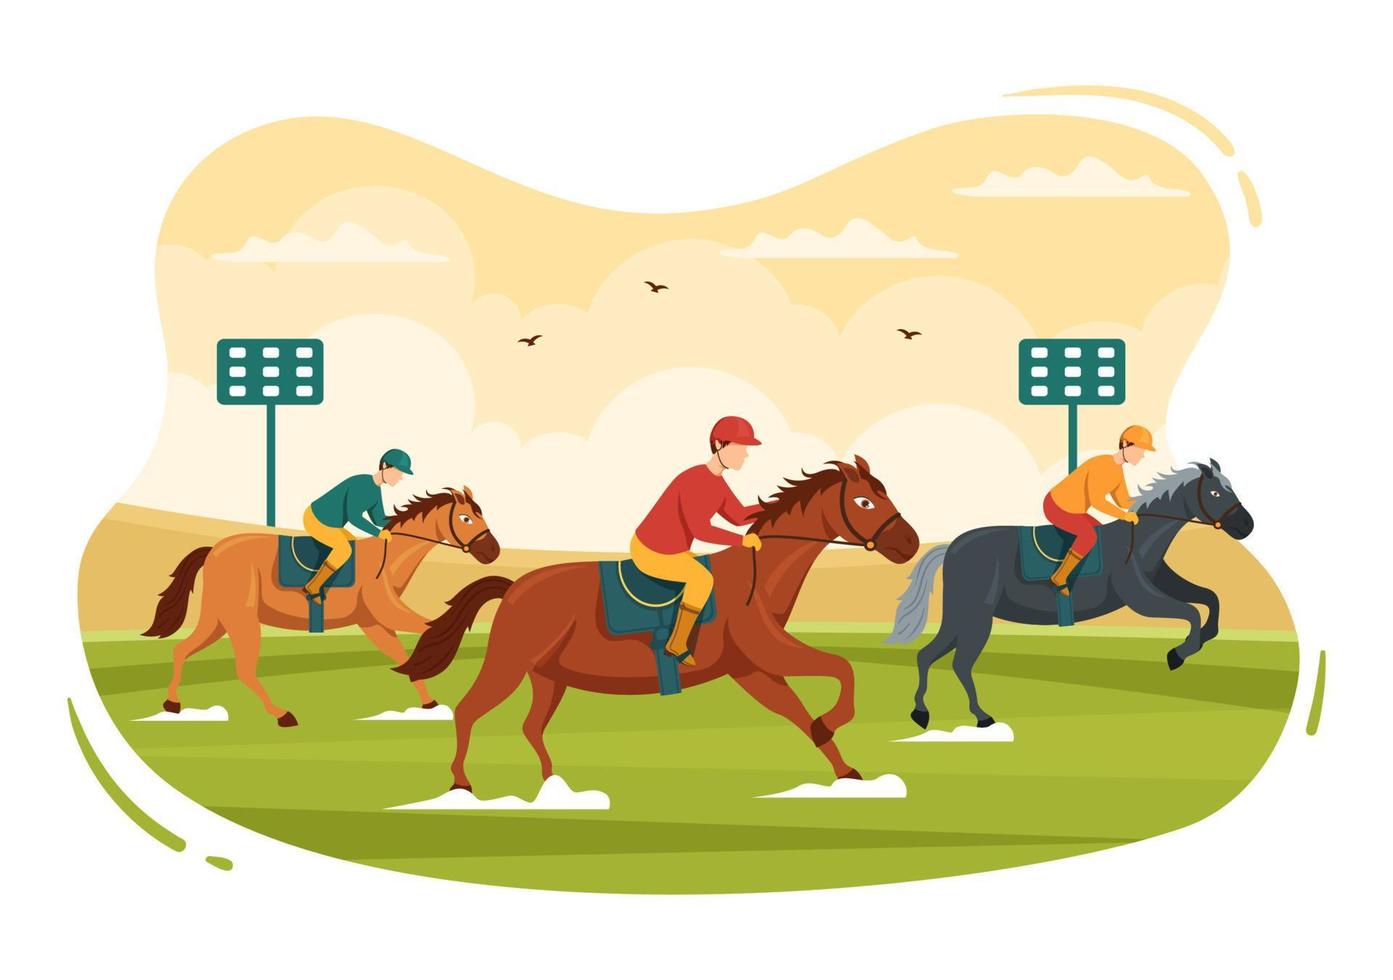 compétition de courses de chevaux dans un hippodrome avec sport de performance équestre et cavalier ou jockeys sur illustration de modèles dessinés à la main de dessin animé plat vecteur